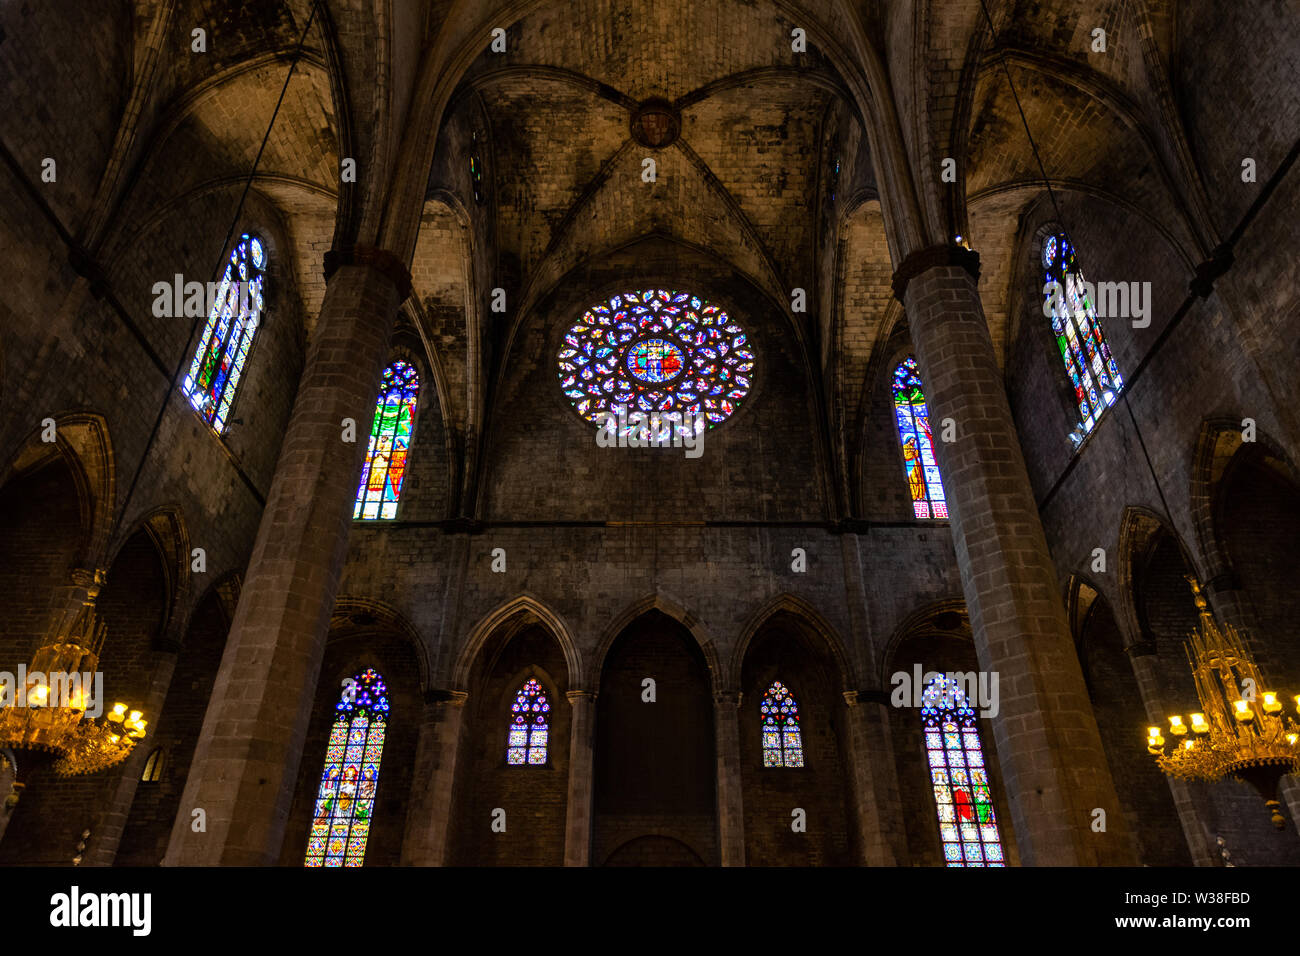 Intérieur de la Basilique Santa Maria del Mar en typique style Gothique catalan avec des arcs et des colonnes. Détail de la couleur rose. La Banque D'Images